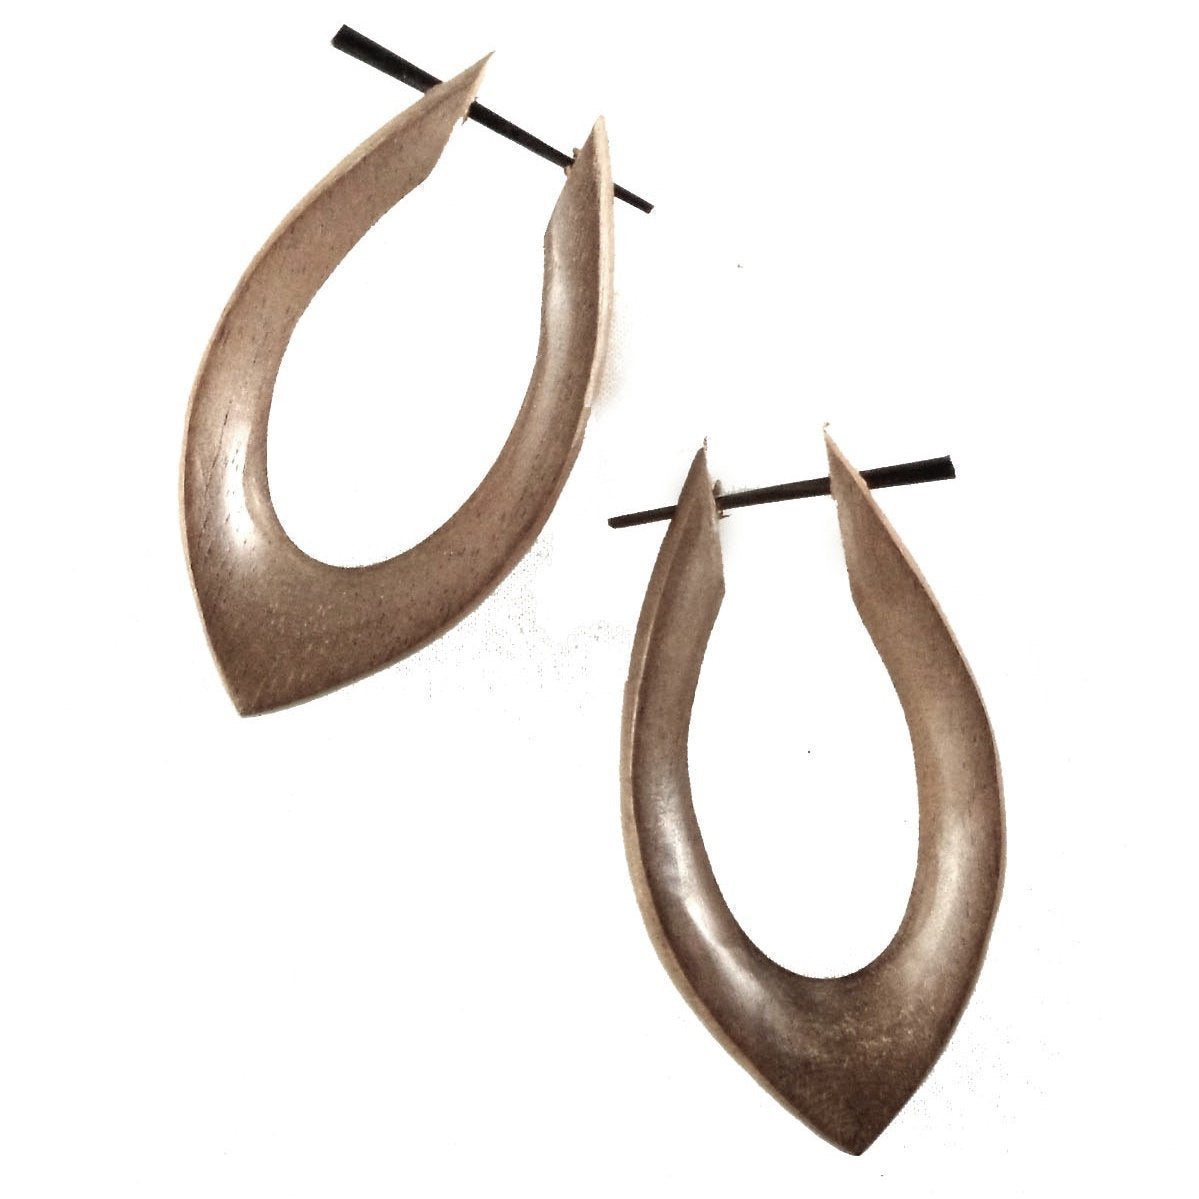  Long pointed Hoop Earrings. Hibiscus Wood